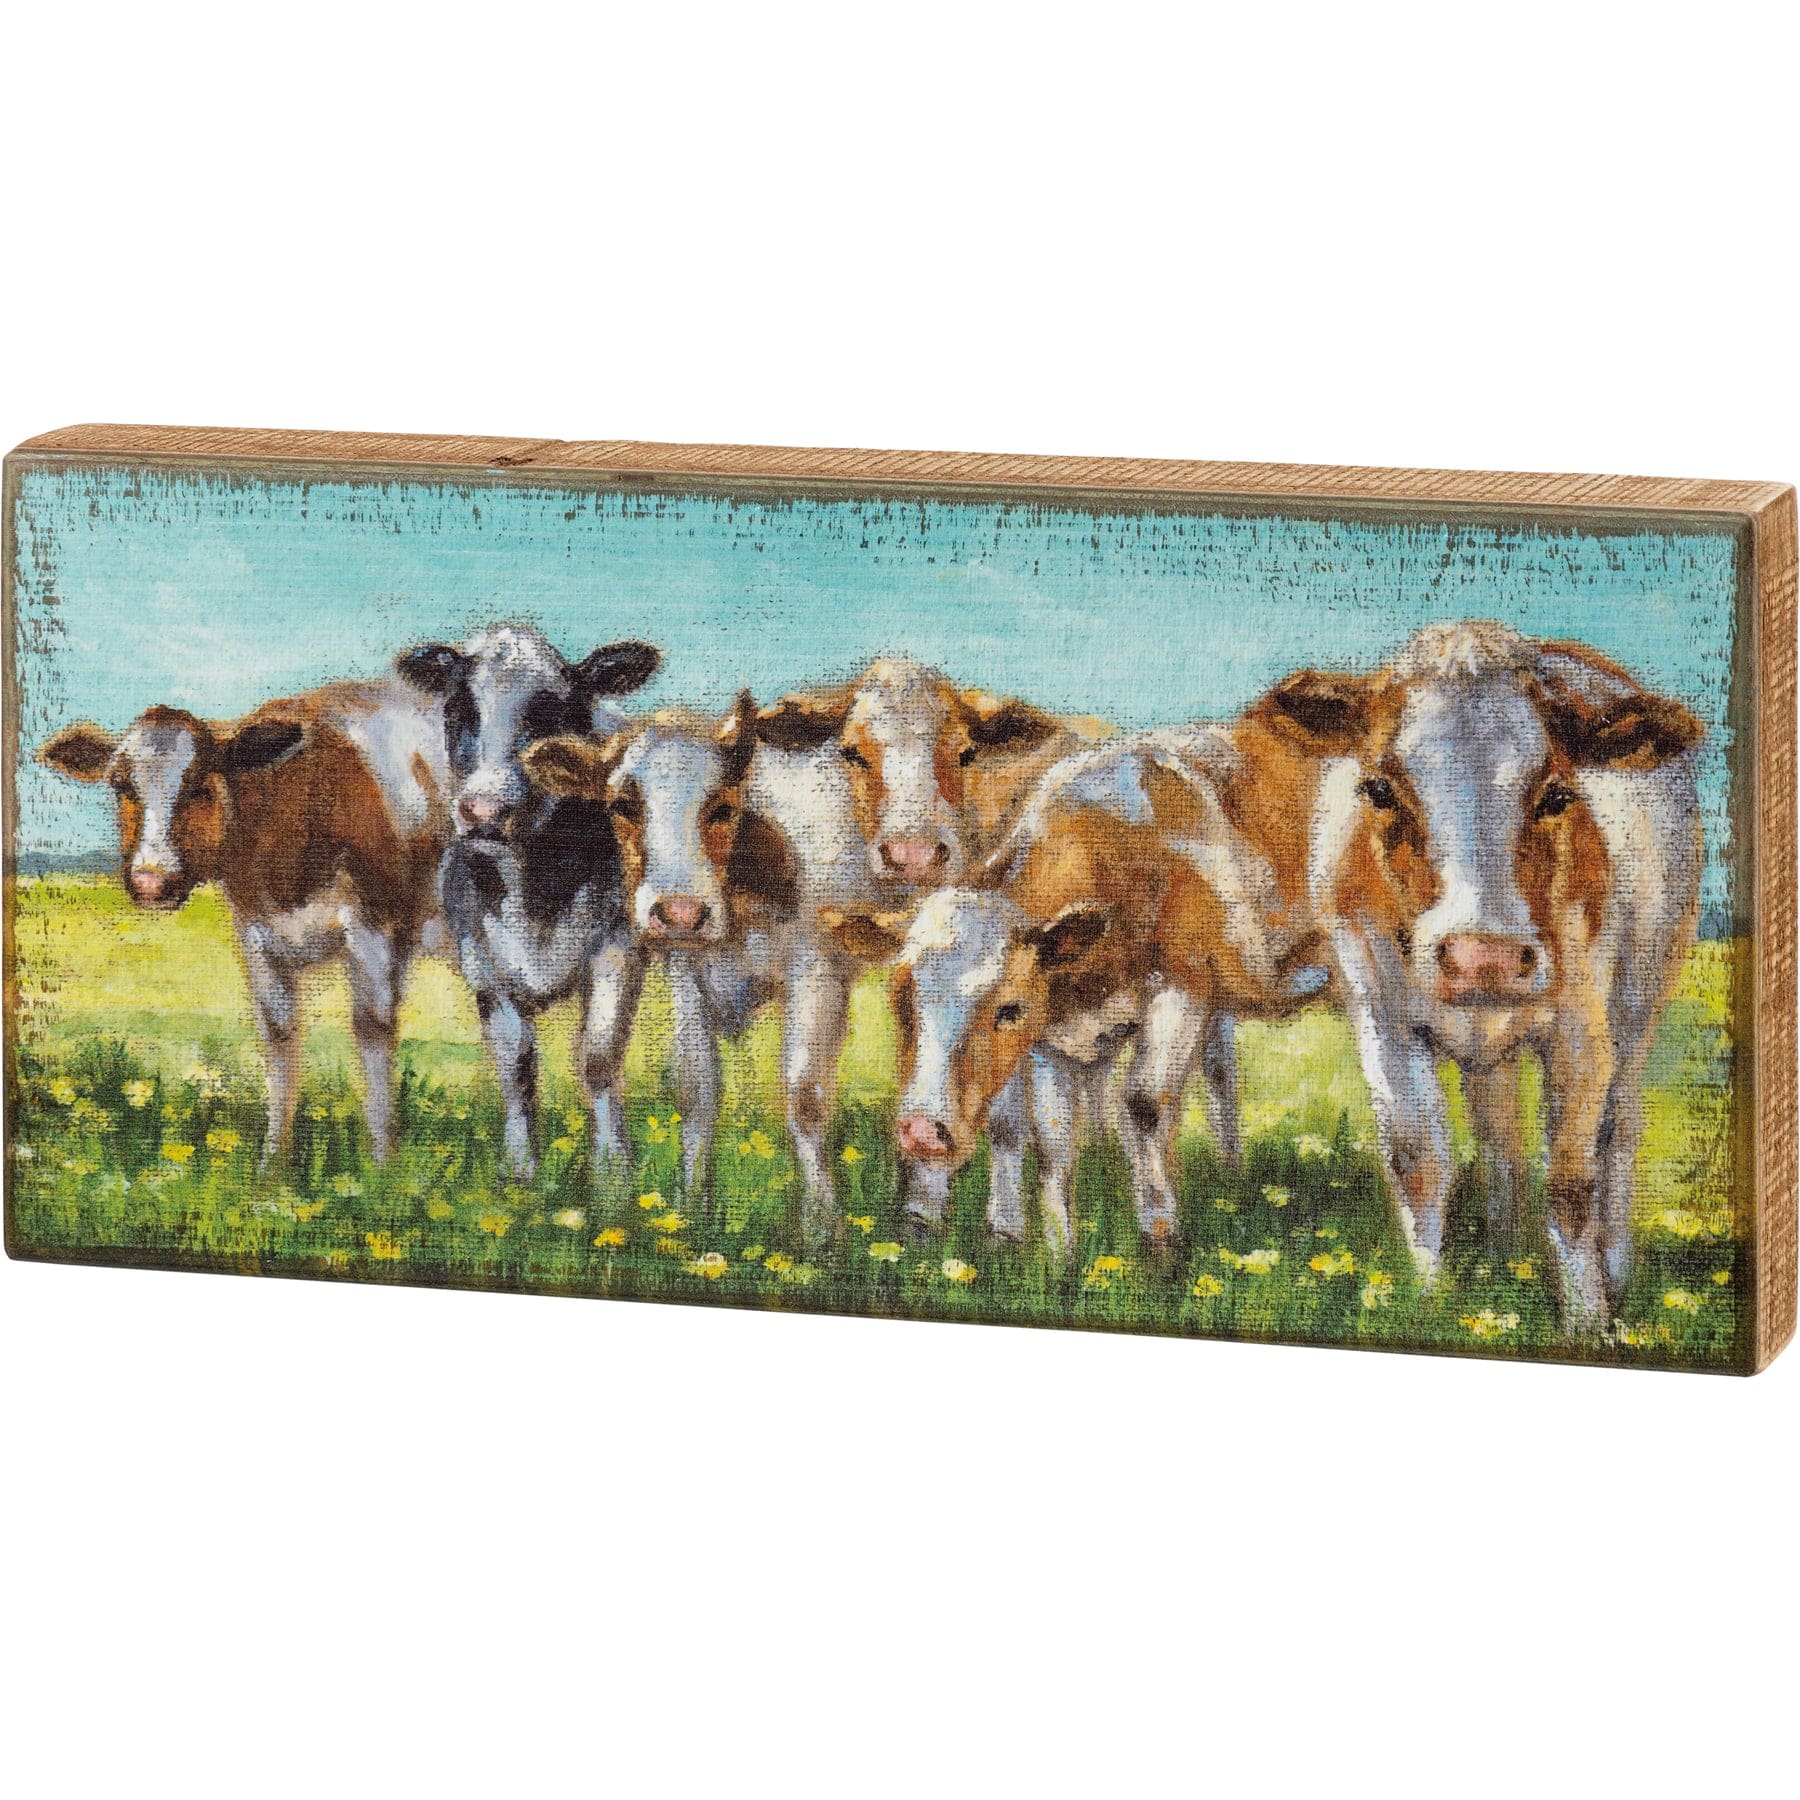 Decor Box Sign - Cow Rows PBK-109164